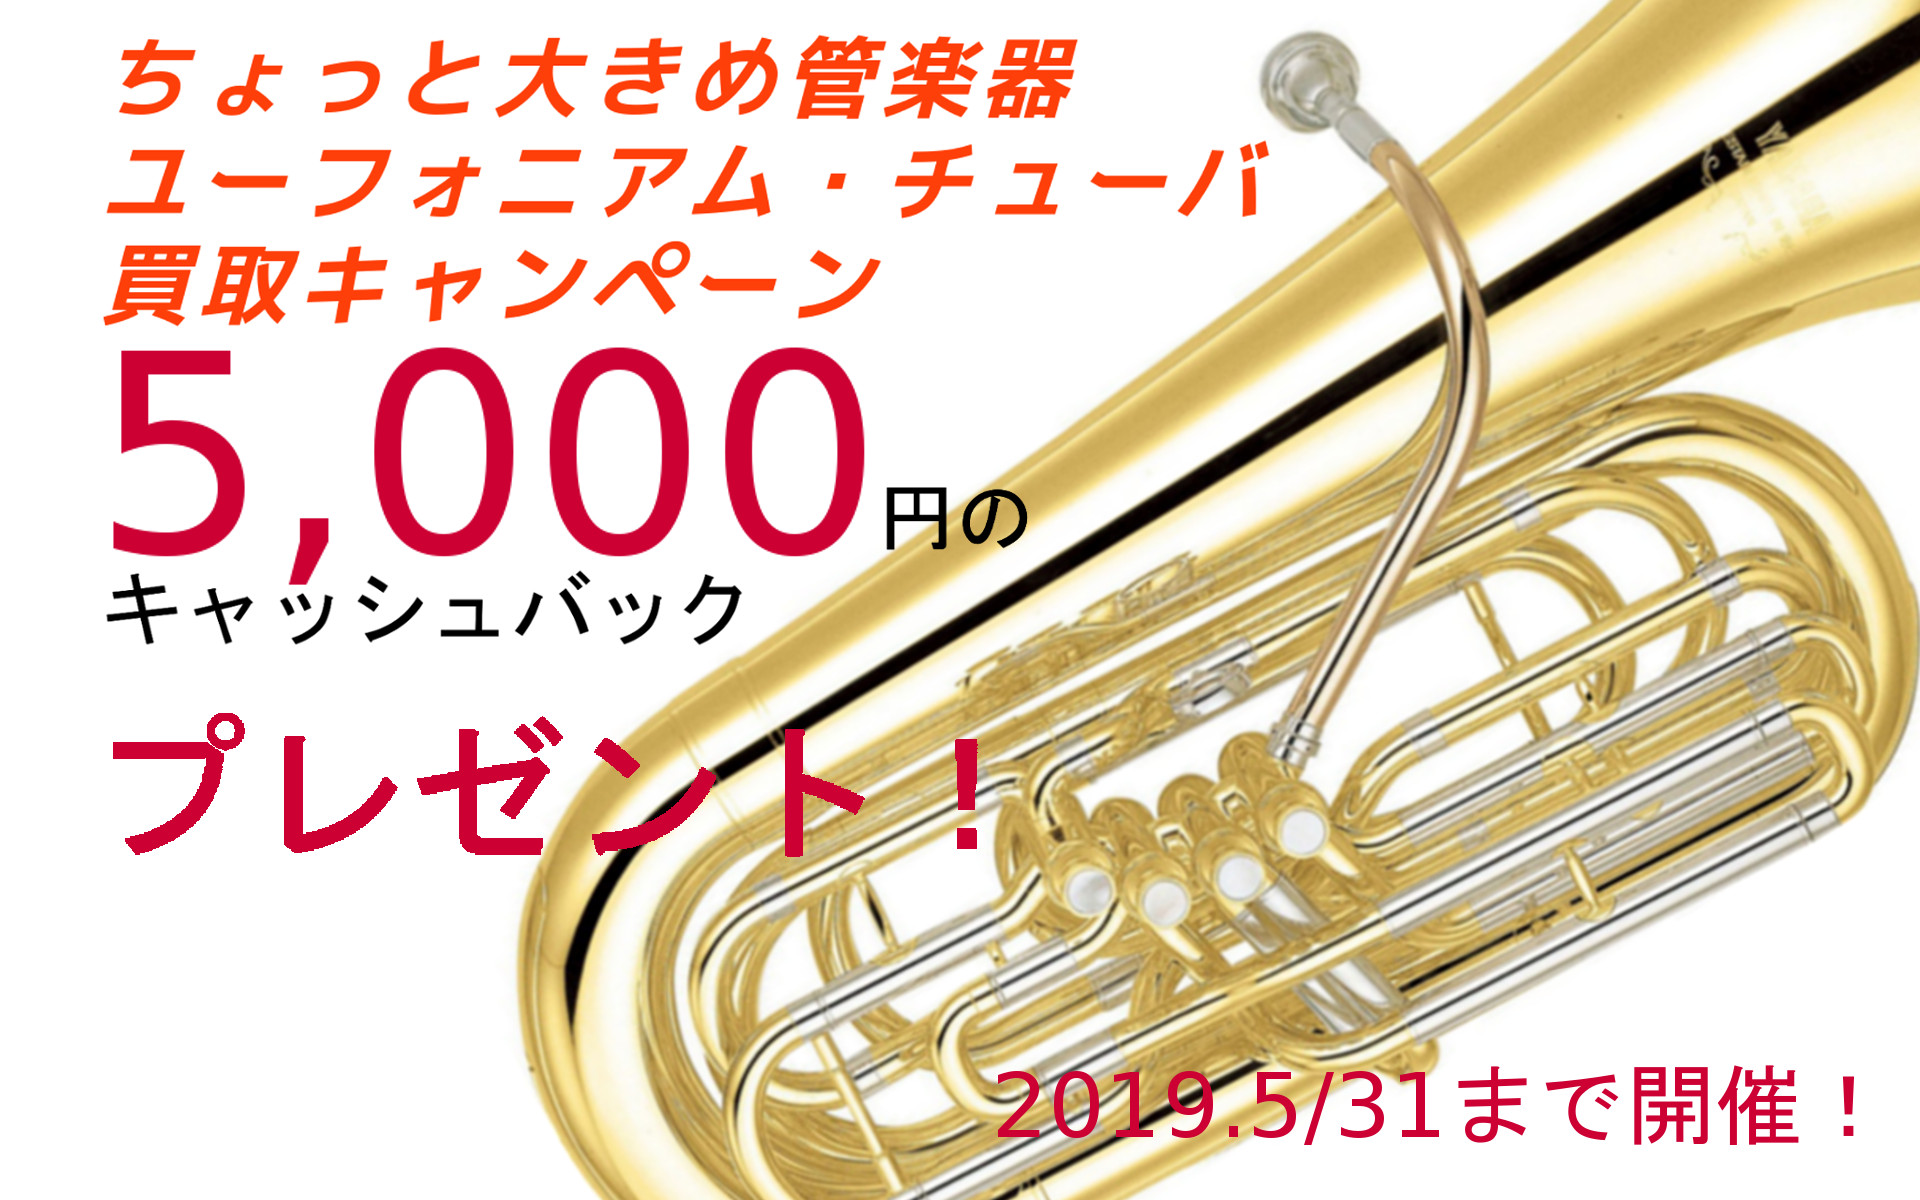 ちょっと大きめ管楽器 ユーフォニアム チューバ買取キャンペーン 管楽器専門サイト Windpal ウインドパル Shibuya East